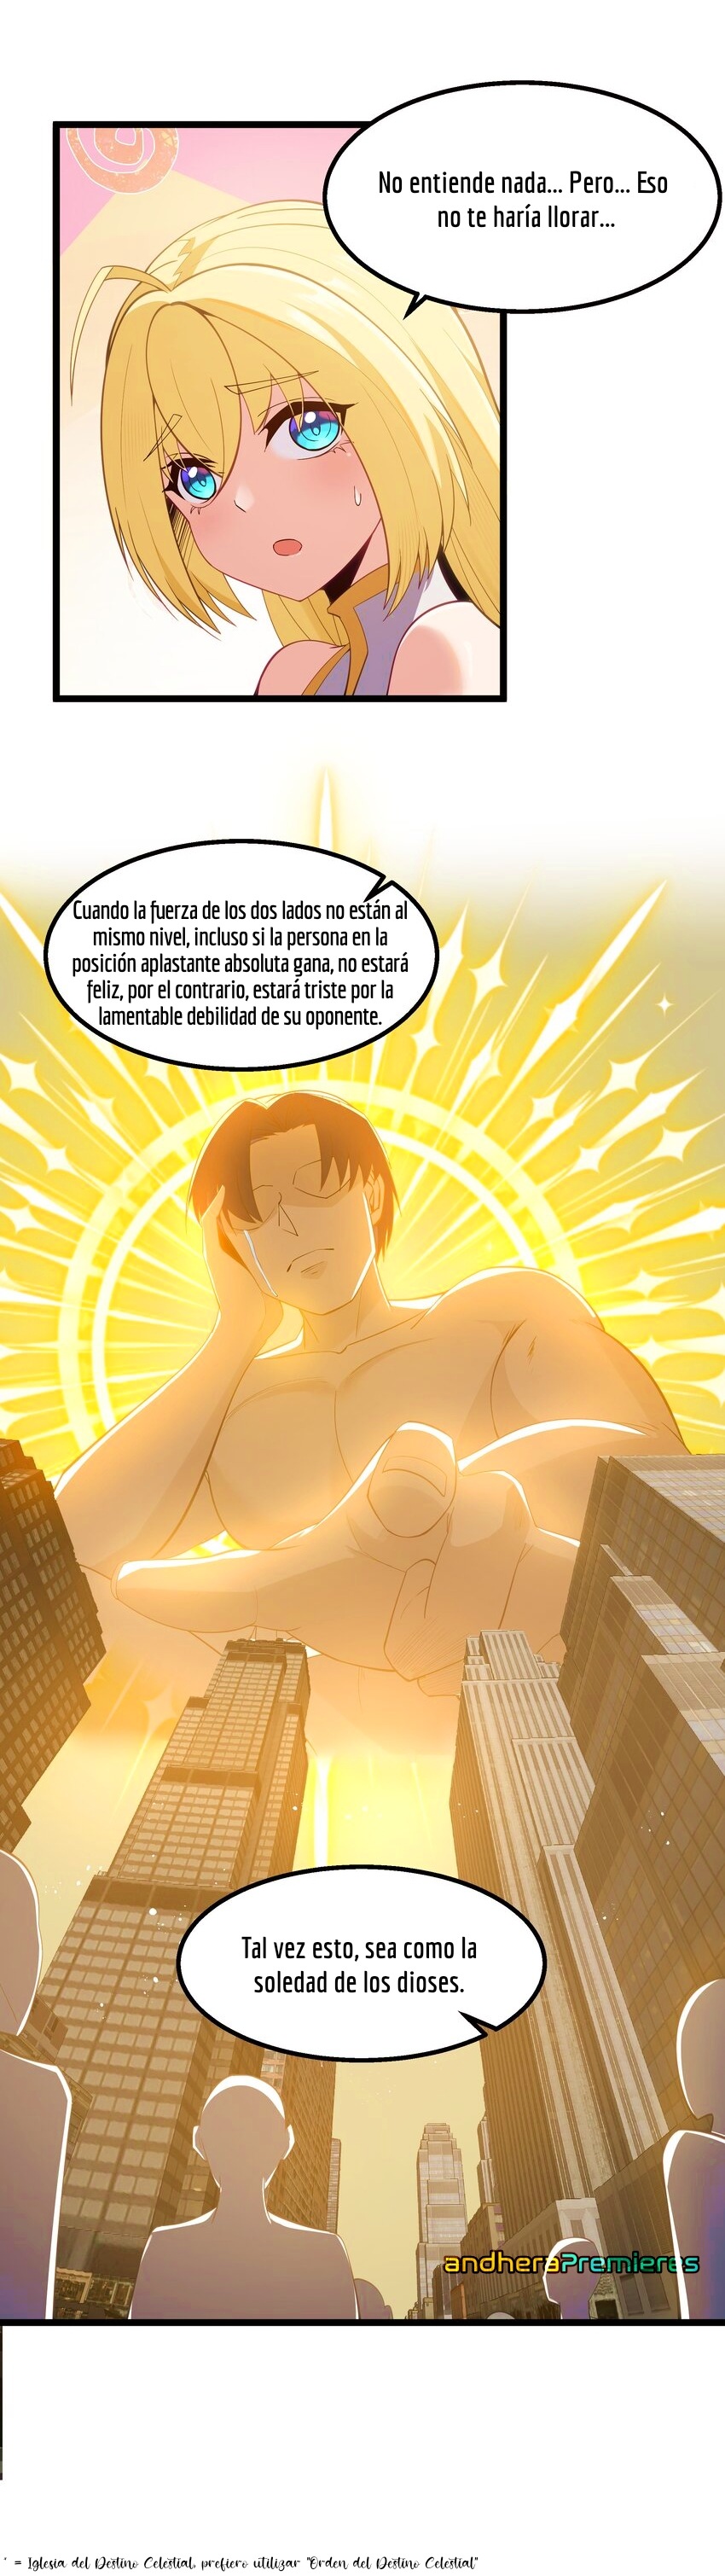 Manga El Héroe de la Avaricia Chapter 7 image number 7